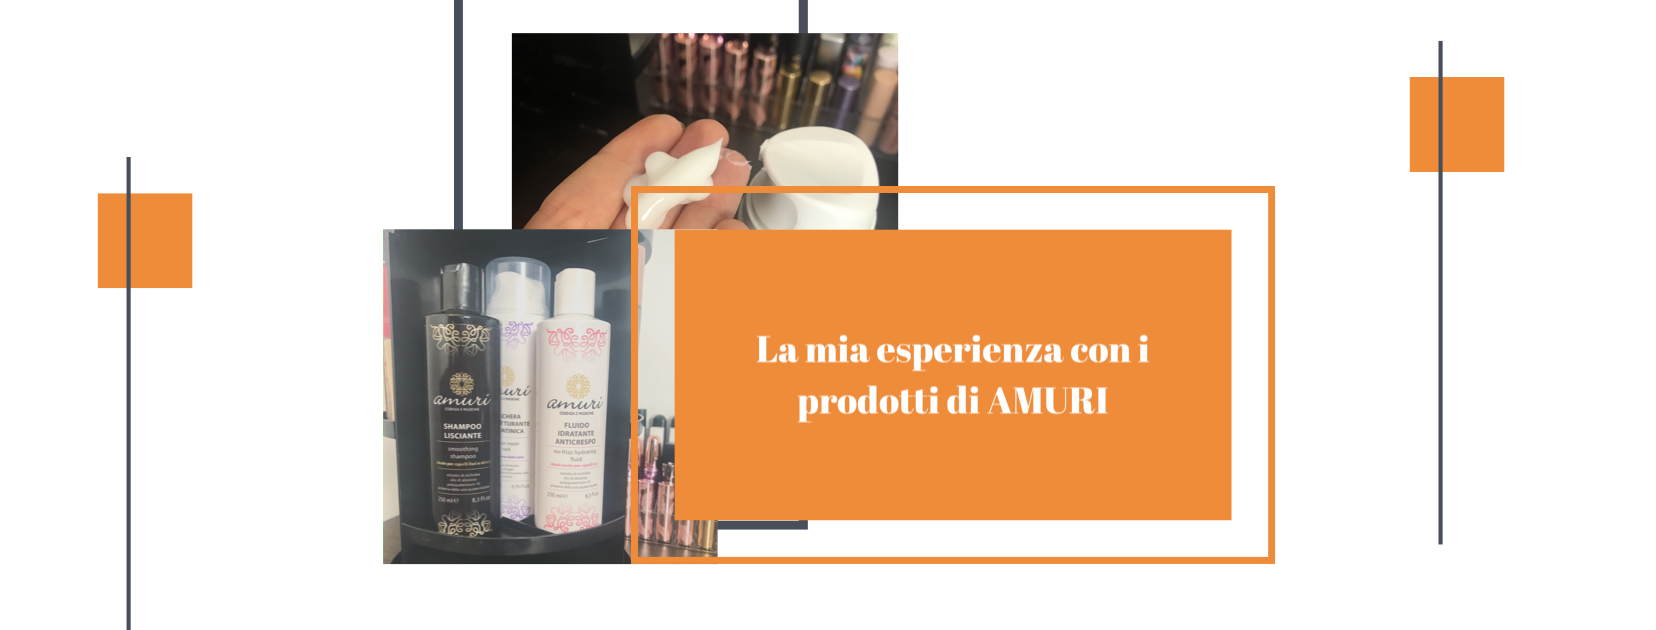 Prodotti professionali per capelli Made in Sicilia: la mia esperienza con Amuri